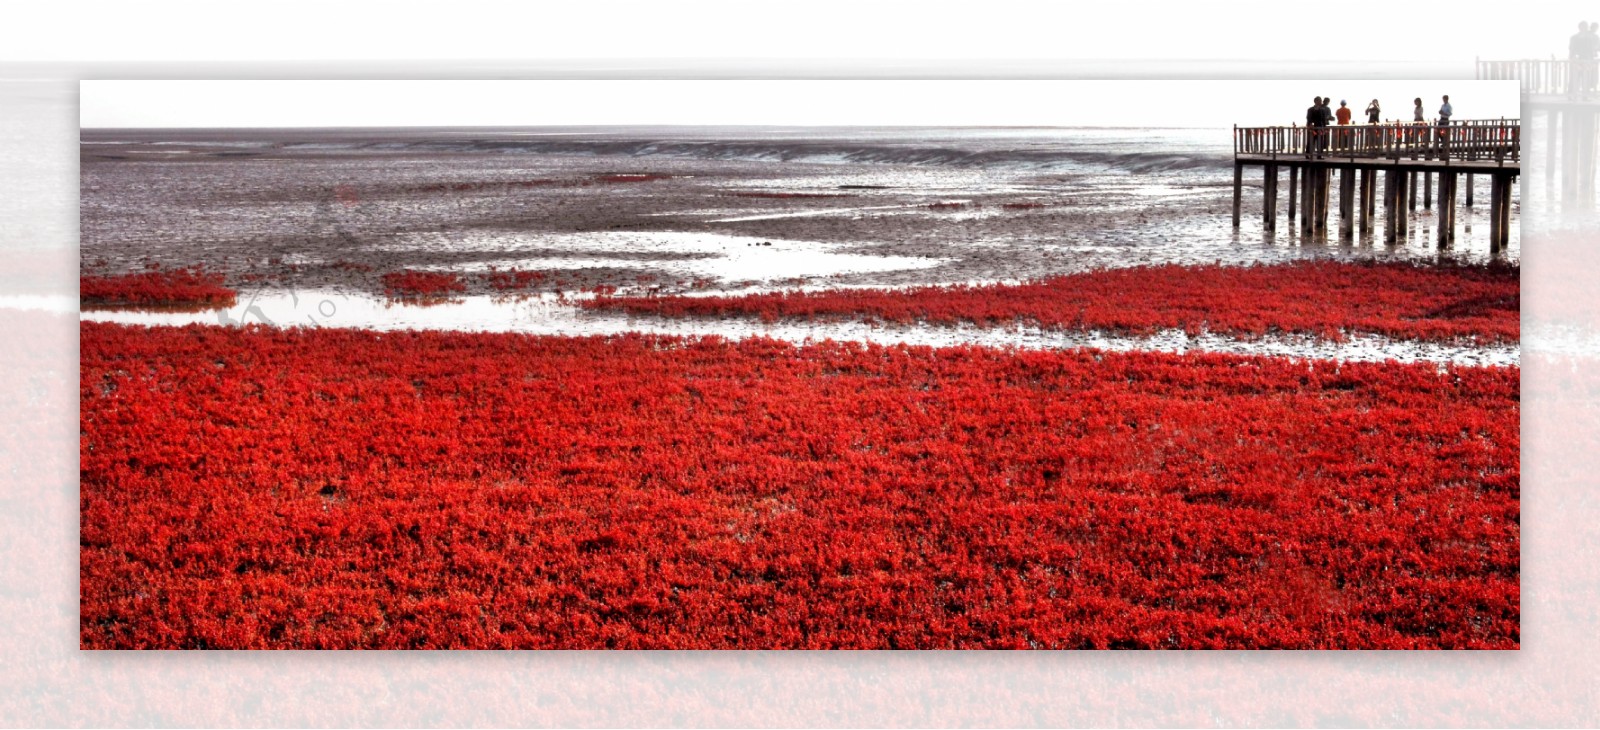 迷人的红海滩湿地图片